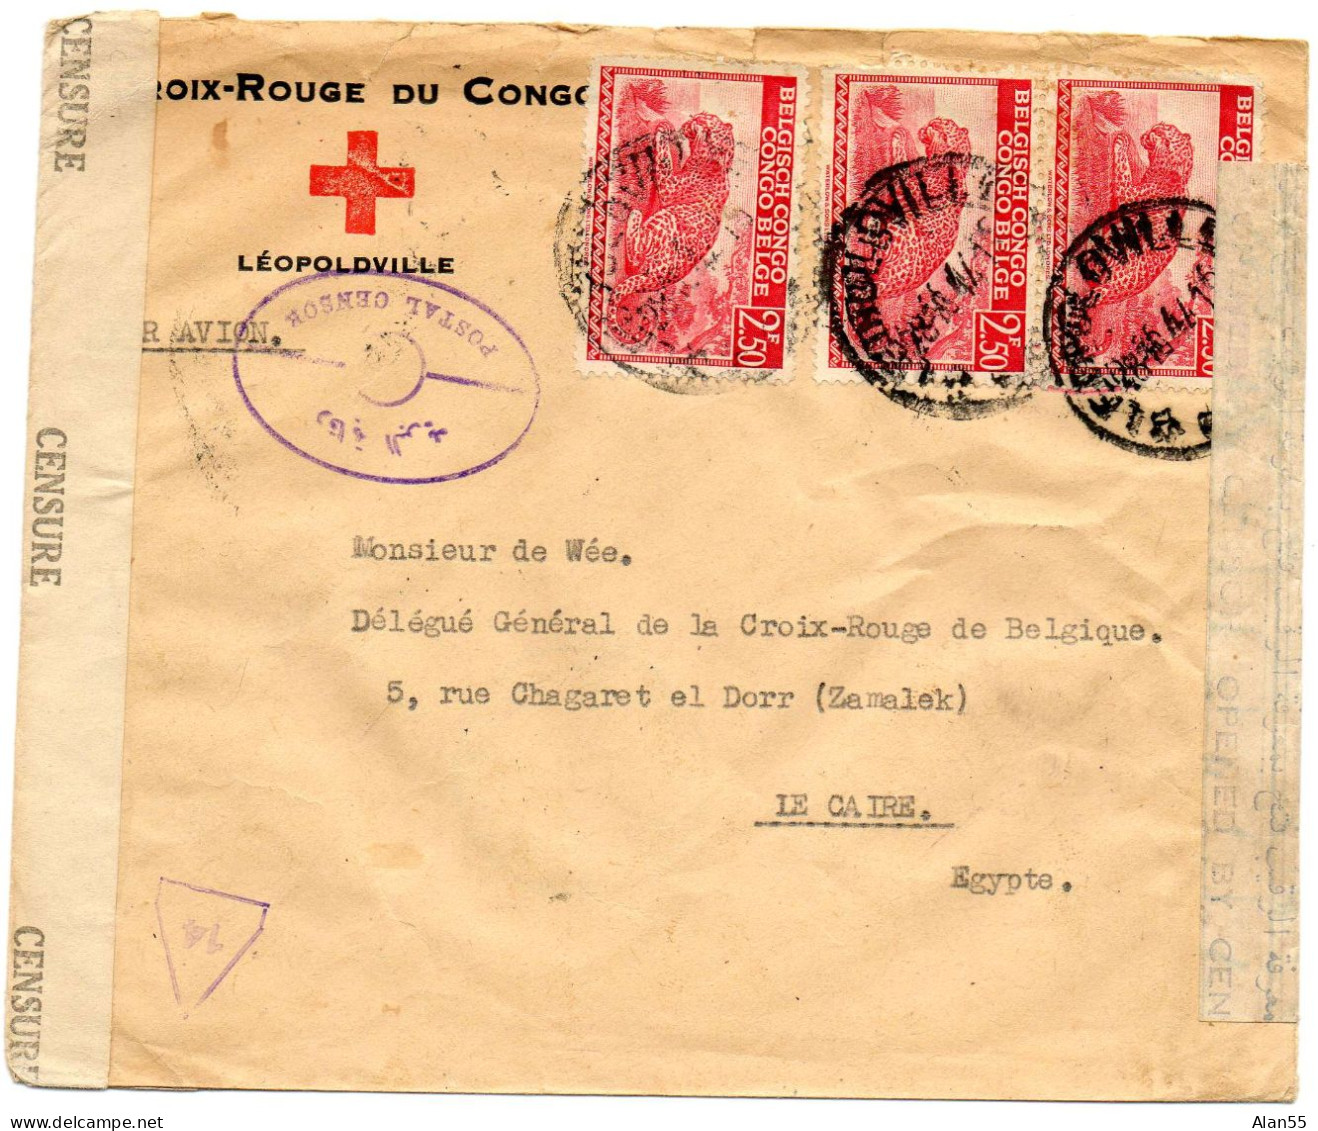 CONGO BELGE. 1944. CROIX-ROUGE DU CONGO A LEOPOLDVILLE POUR CROIX-ROUGE BELGE EN EGYPTE. DOUBLE CENSURE. - Lettres & Documents